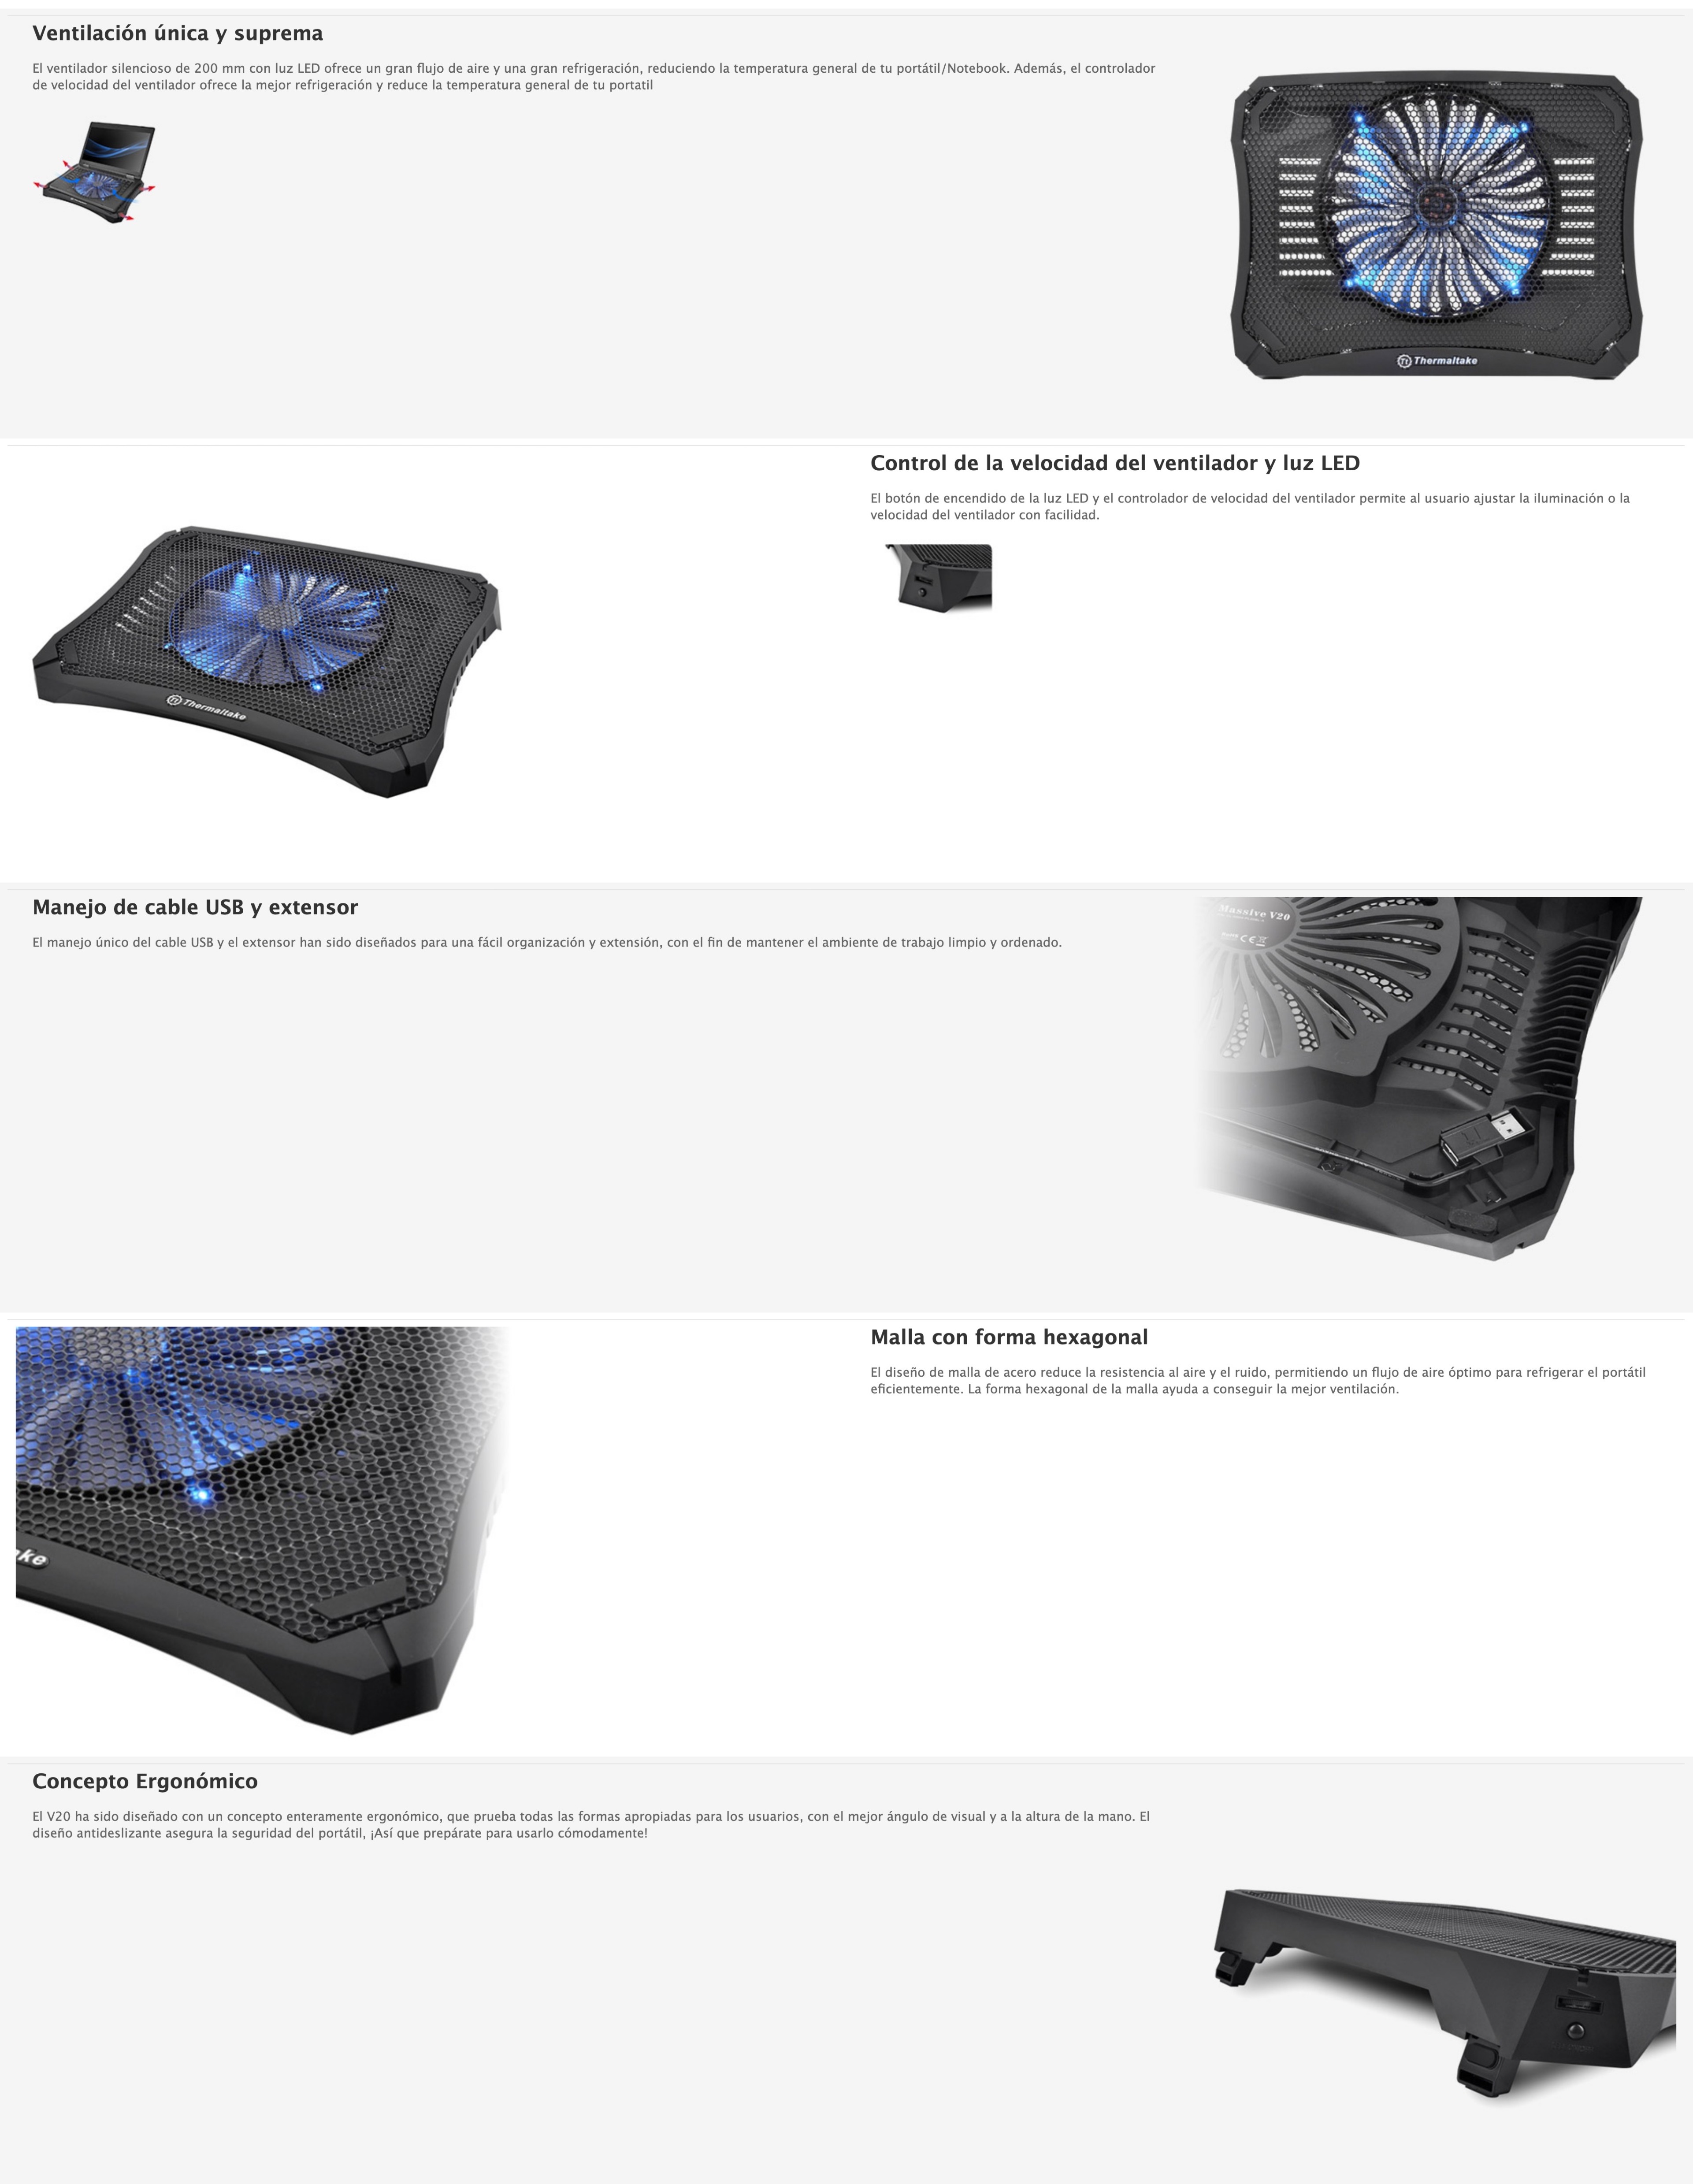 Base para Laptop con Ventilador Massive V20 - Thermaltake Massive V20. Tamaño máximo de pantalla: 43.2 cm (17"), Número de ventiladores incluidos: 1 pieza(s), Tamaño mínimo de pantalla: 25.4 cm (10"). Color del producto: Negro, Materiales: Plástico, Iluminación de color: Azul. Tipo de alimentación: USB. Peso: 700 g. Dimensiones (Ancho x Profundidad x Altura): 365 x 276 x 42 mm